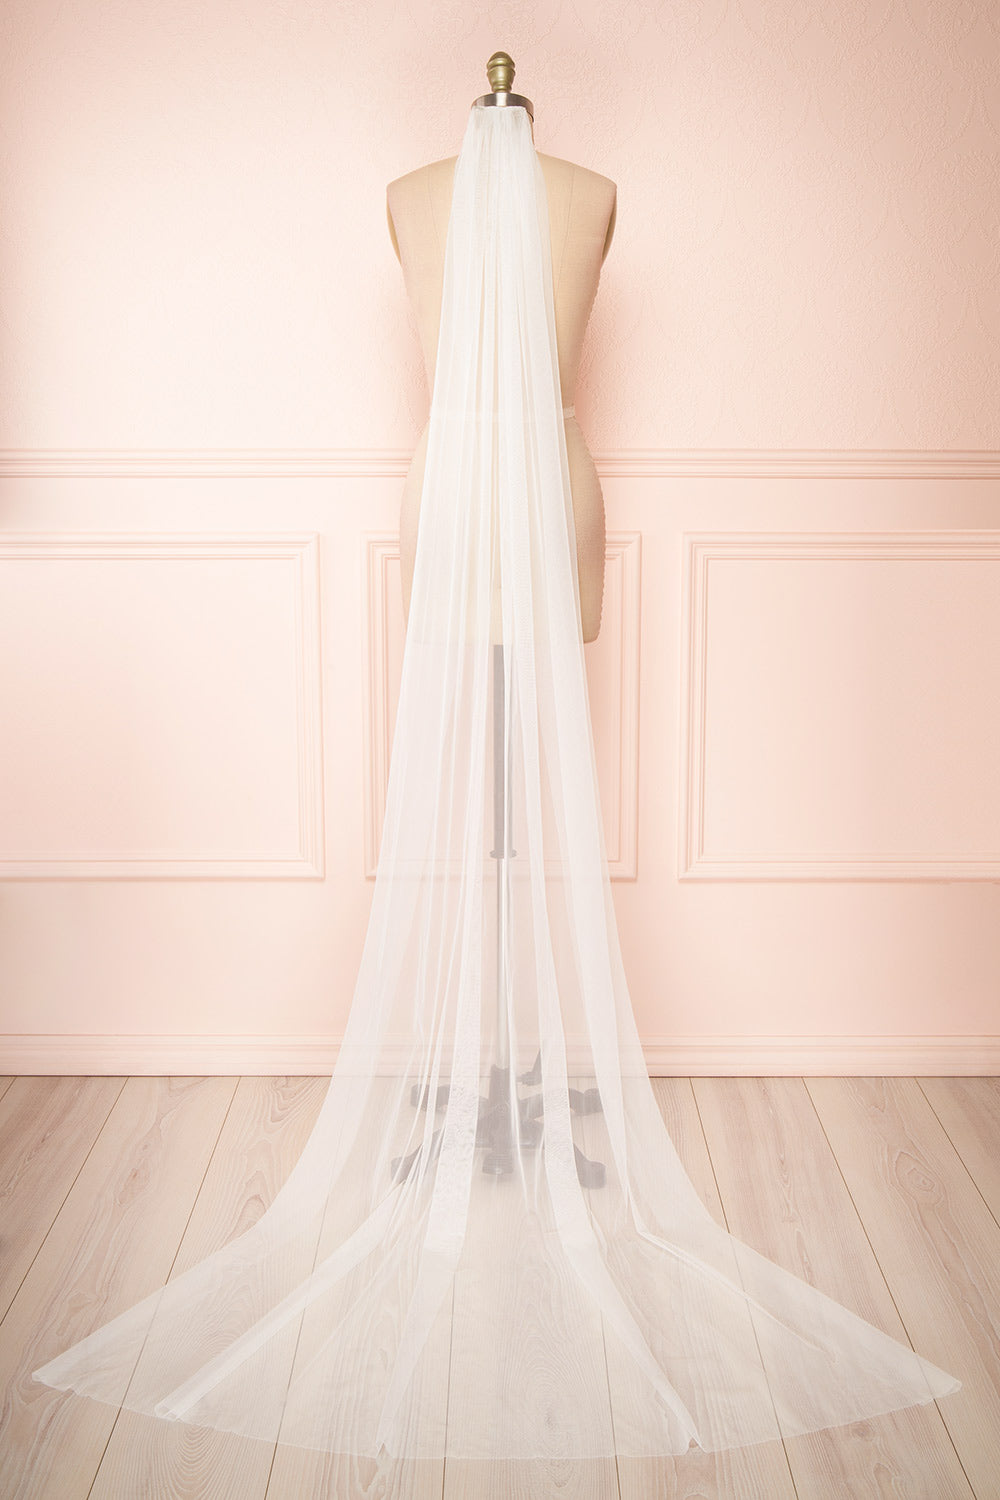 Frederiqua White Tulle Wedding Veil | Boudoir 1861 view